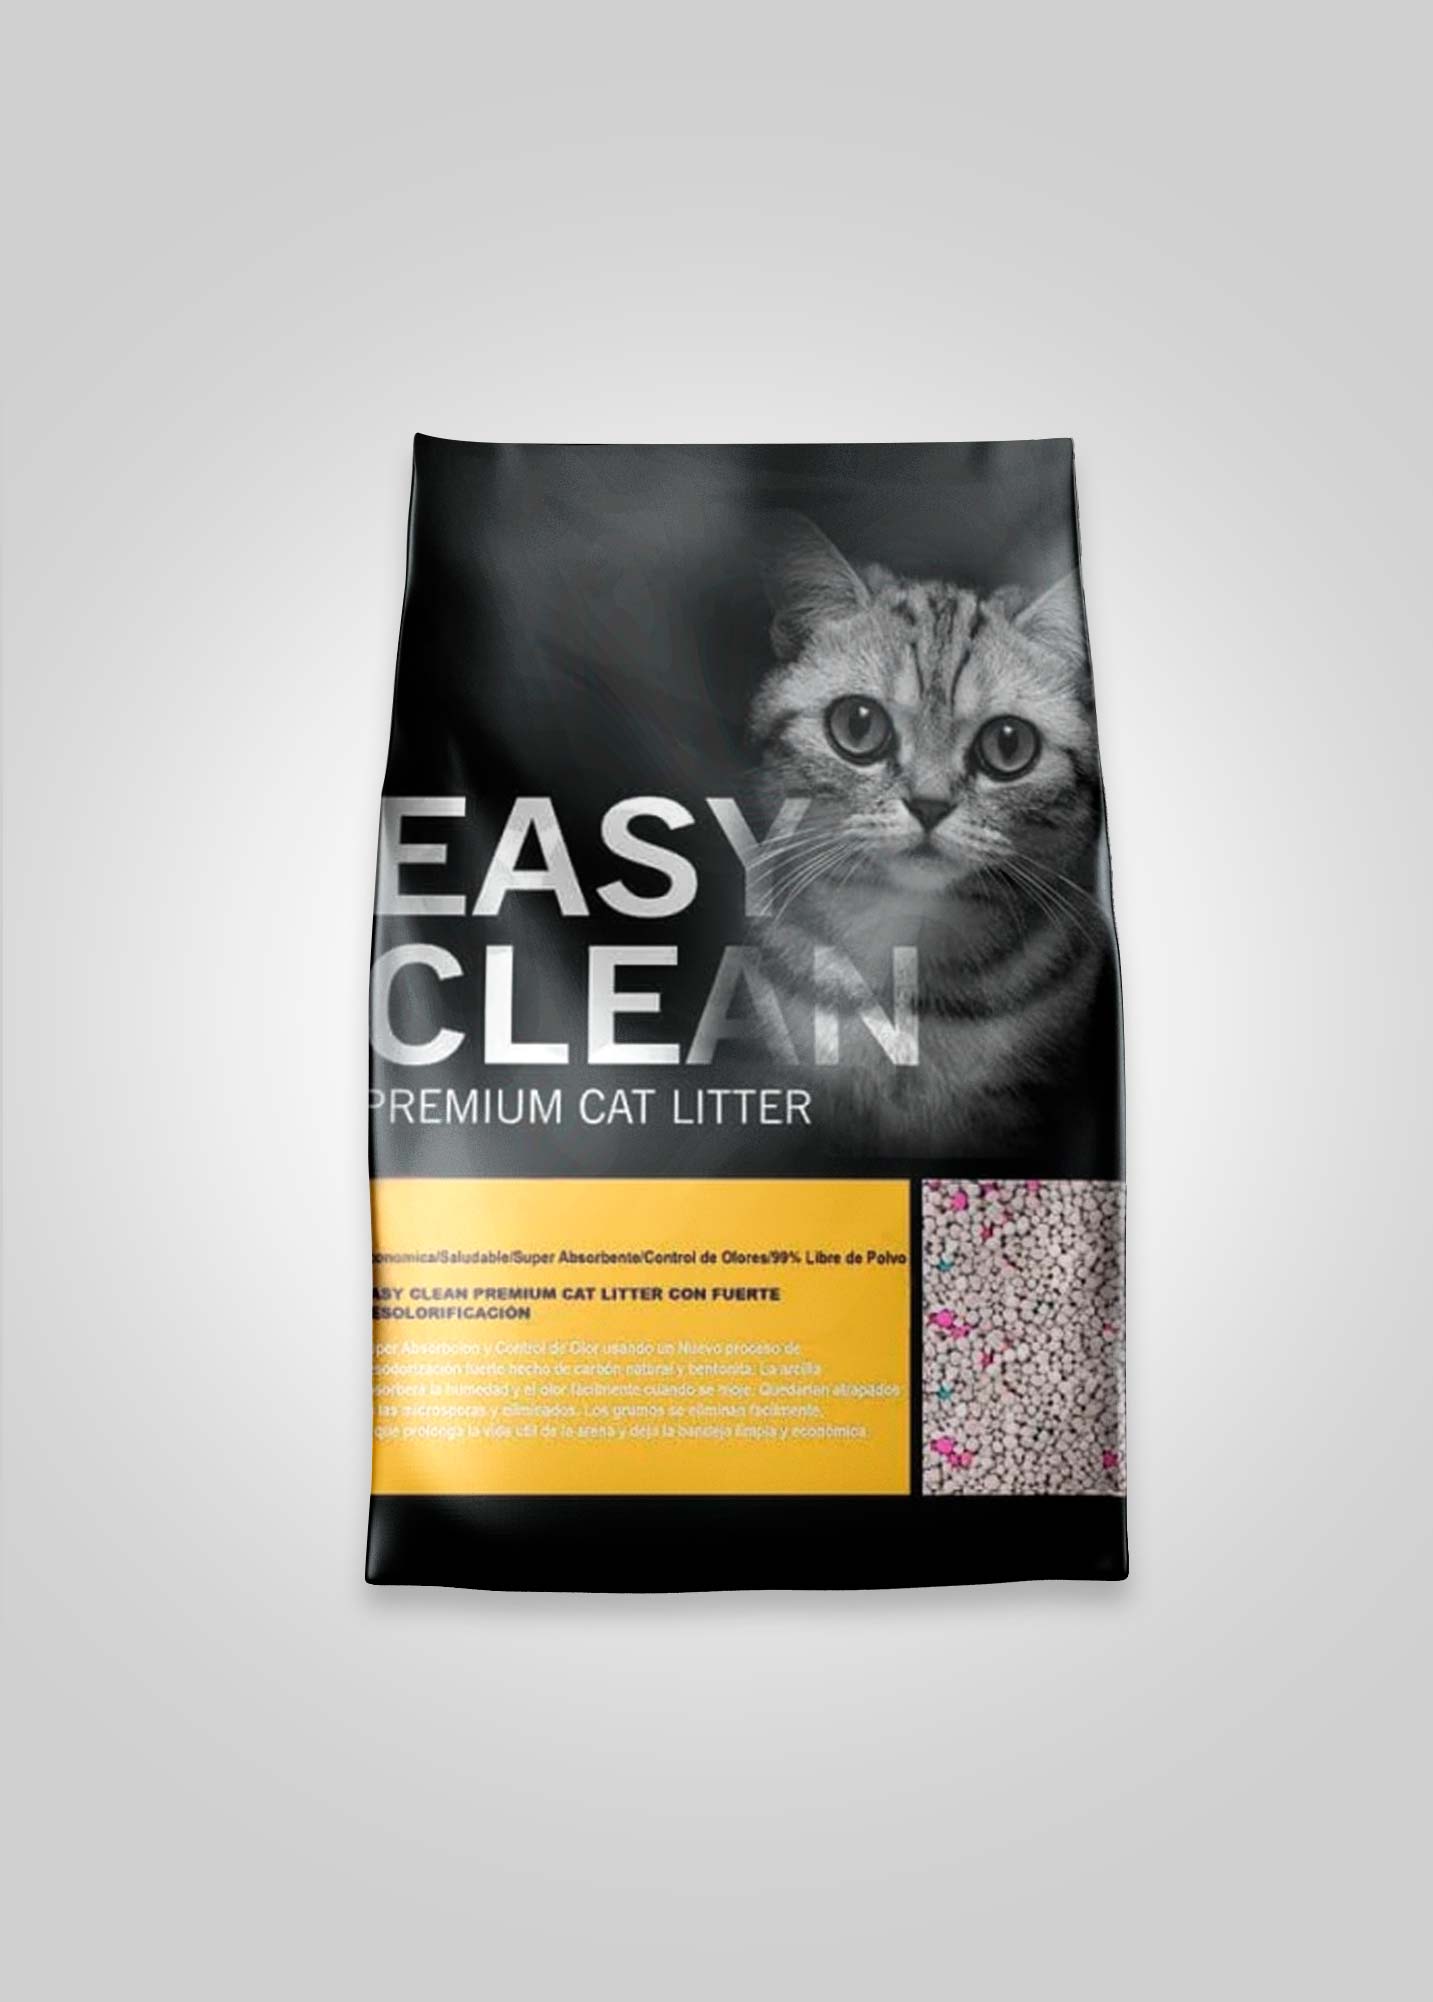 Arena premium para gatos Easy Clean